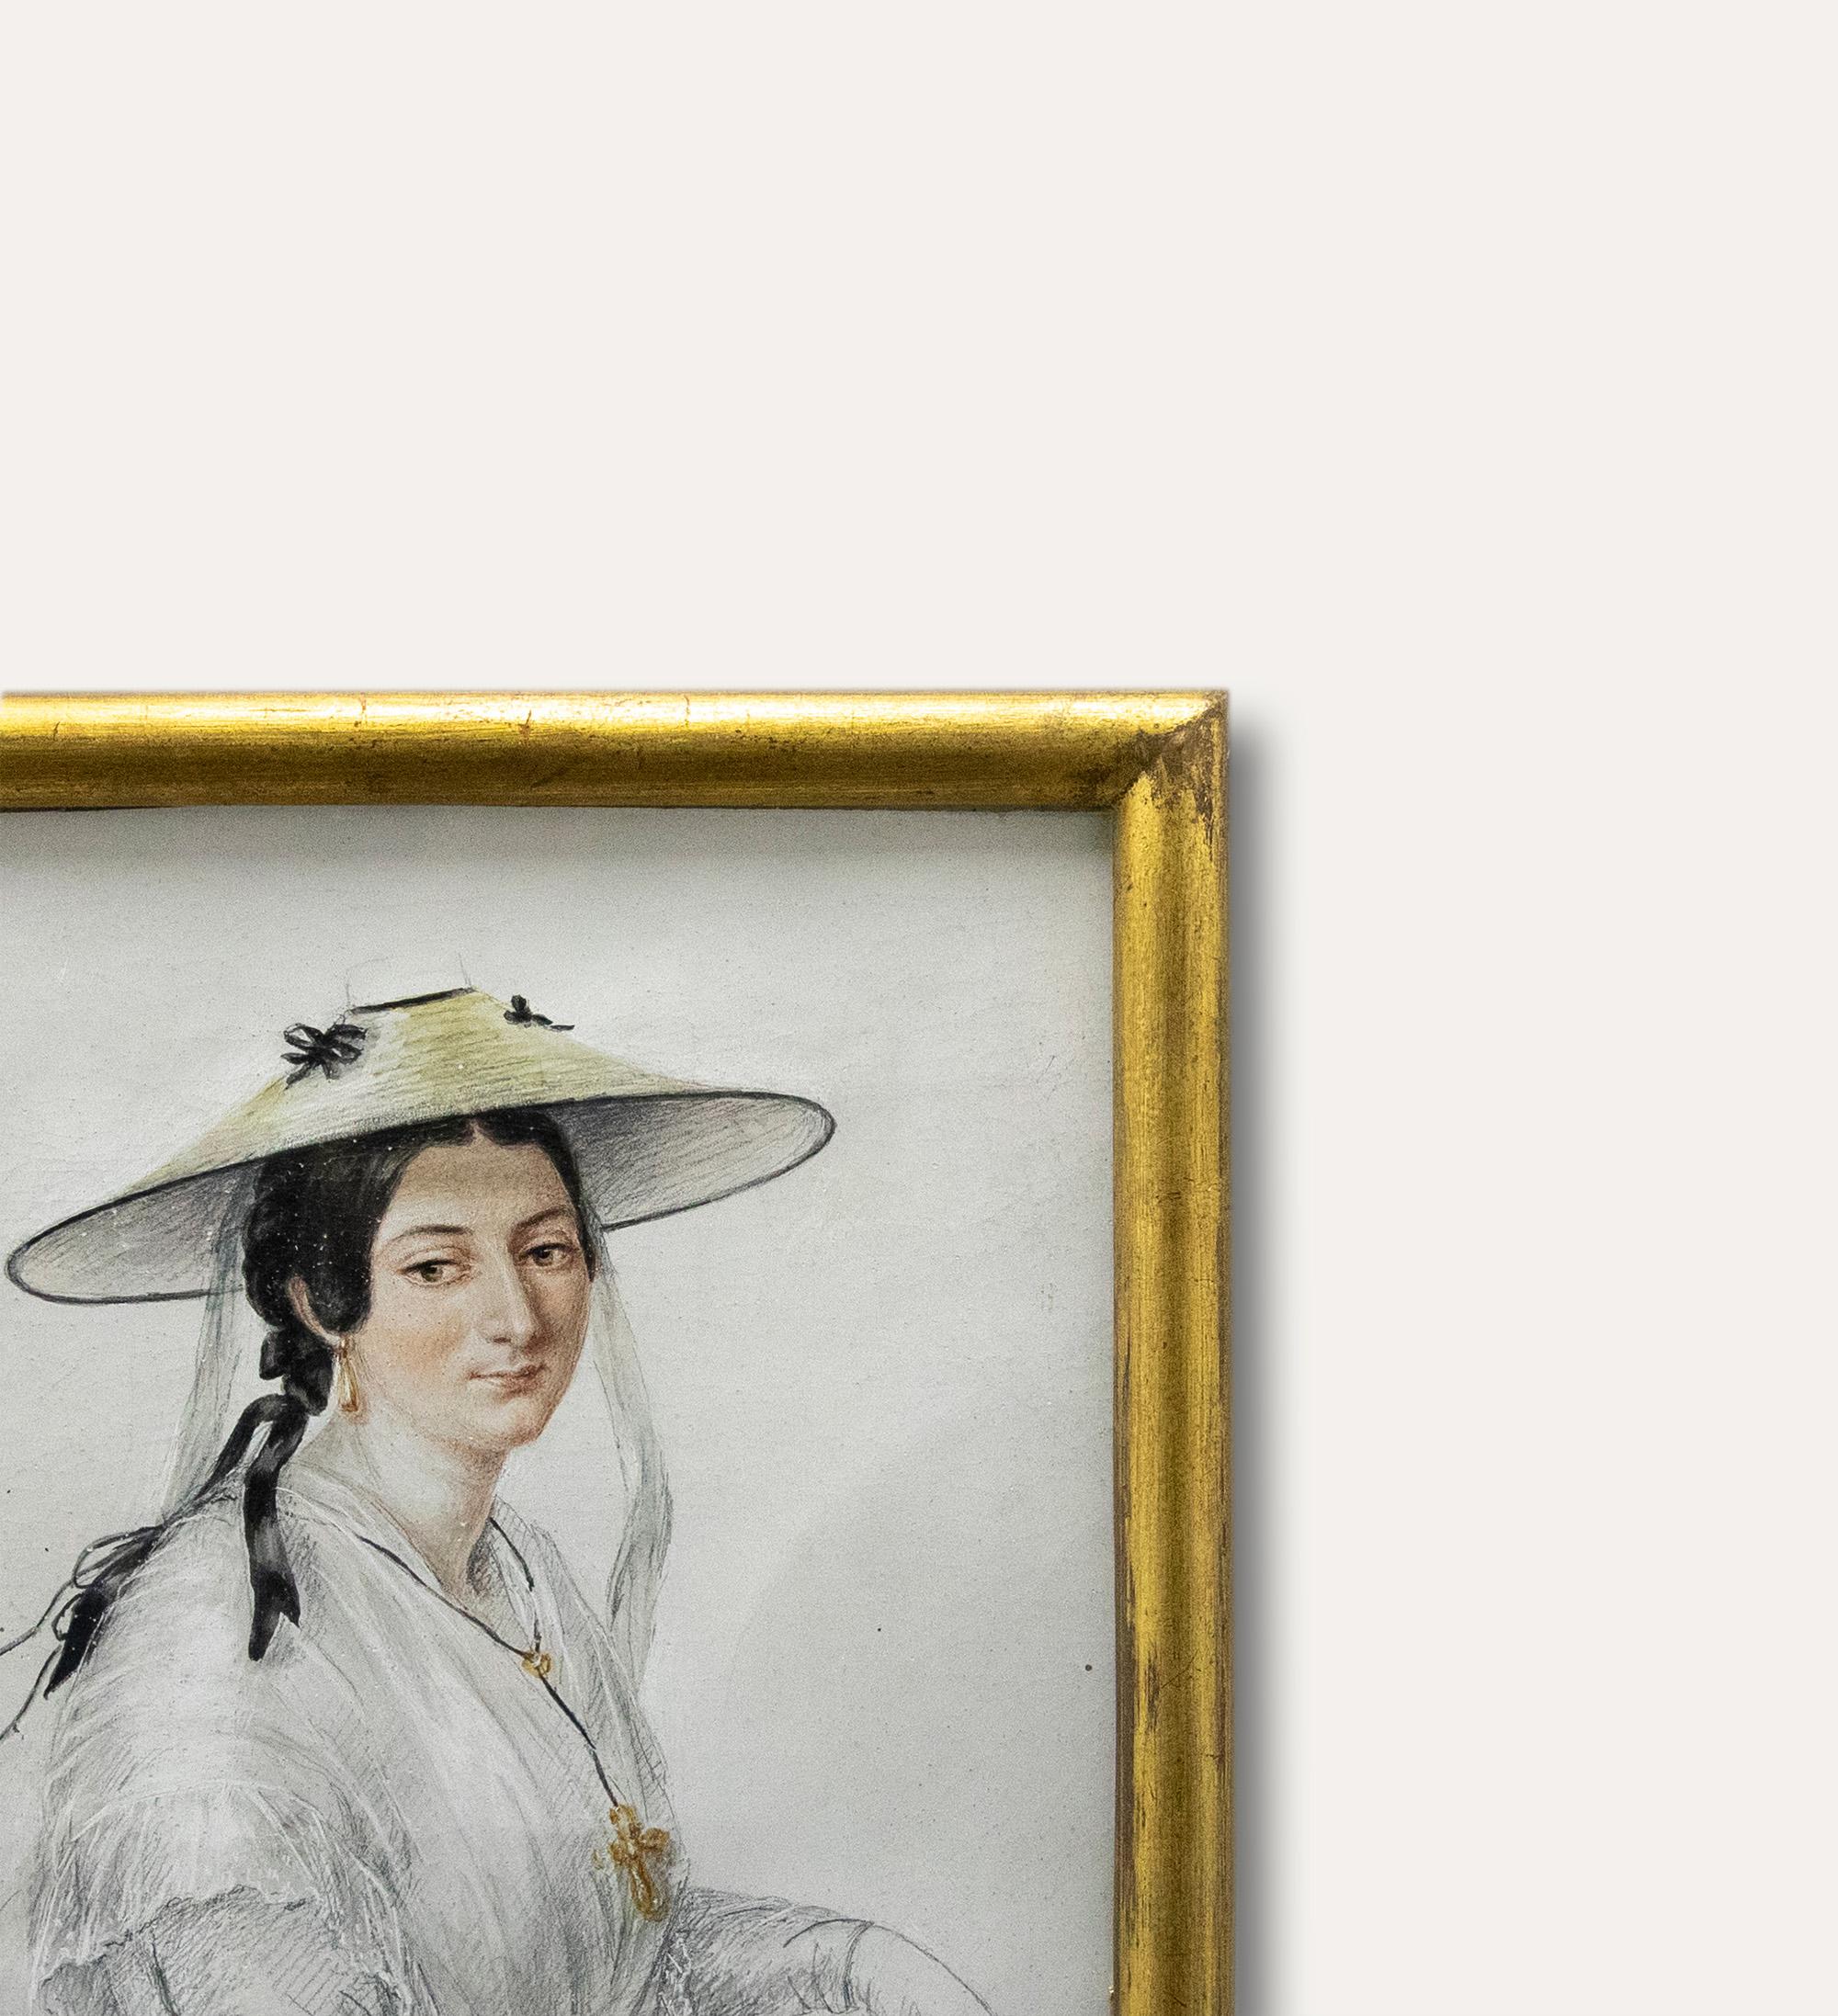 Eine reizvolle Porträtstudie, die eine in weiße Spitze gekleidete Frau zeigt. Sie trägt eine Haube mit schwarzen Verzierungen, die zu der Schleife in ihrem Haar passen, und stützt ihren Arm auf einen Blumenkorb. Zart und detailliert in Aquarell und